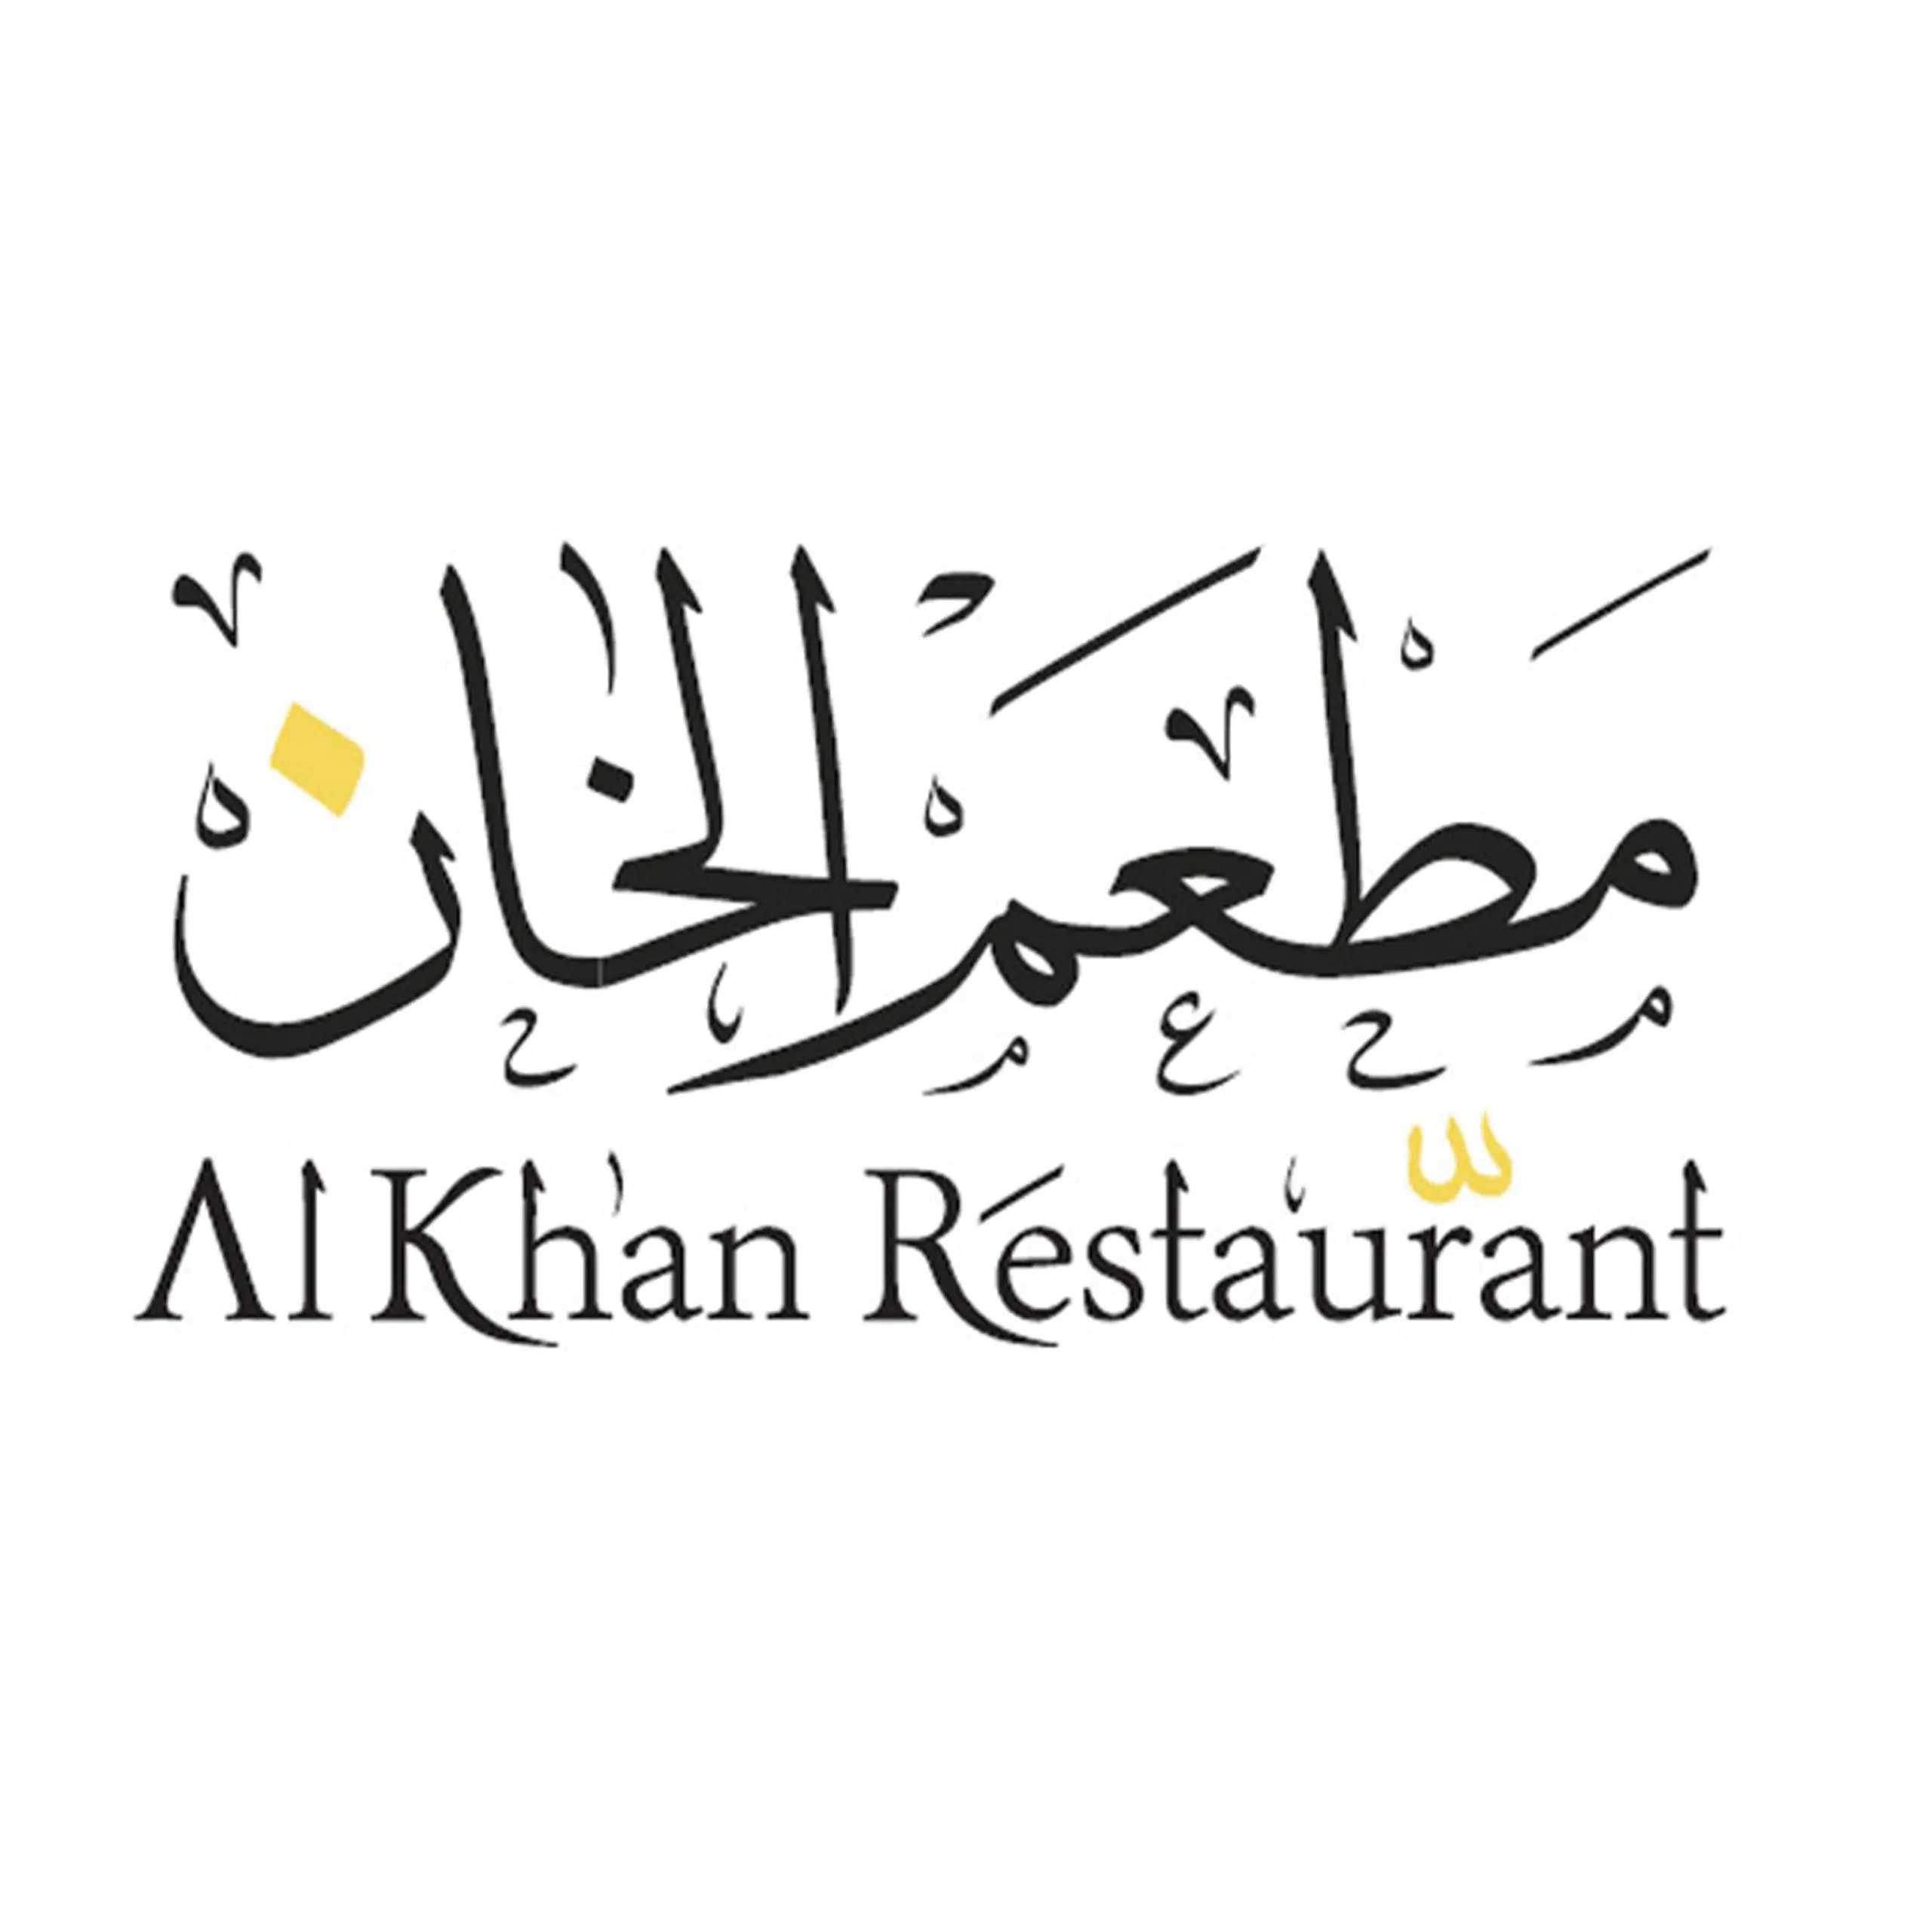 Al Khan - Coming Soon in UAE